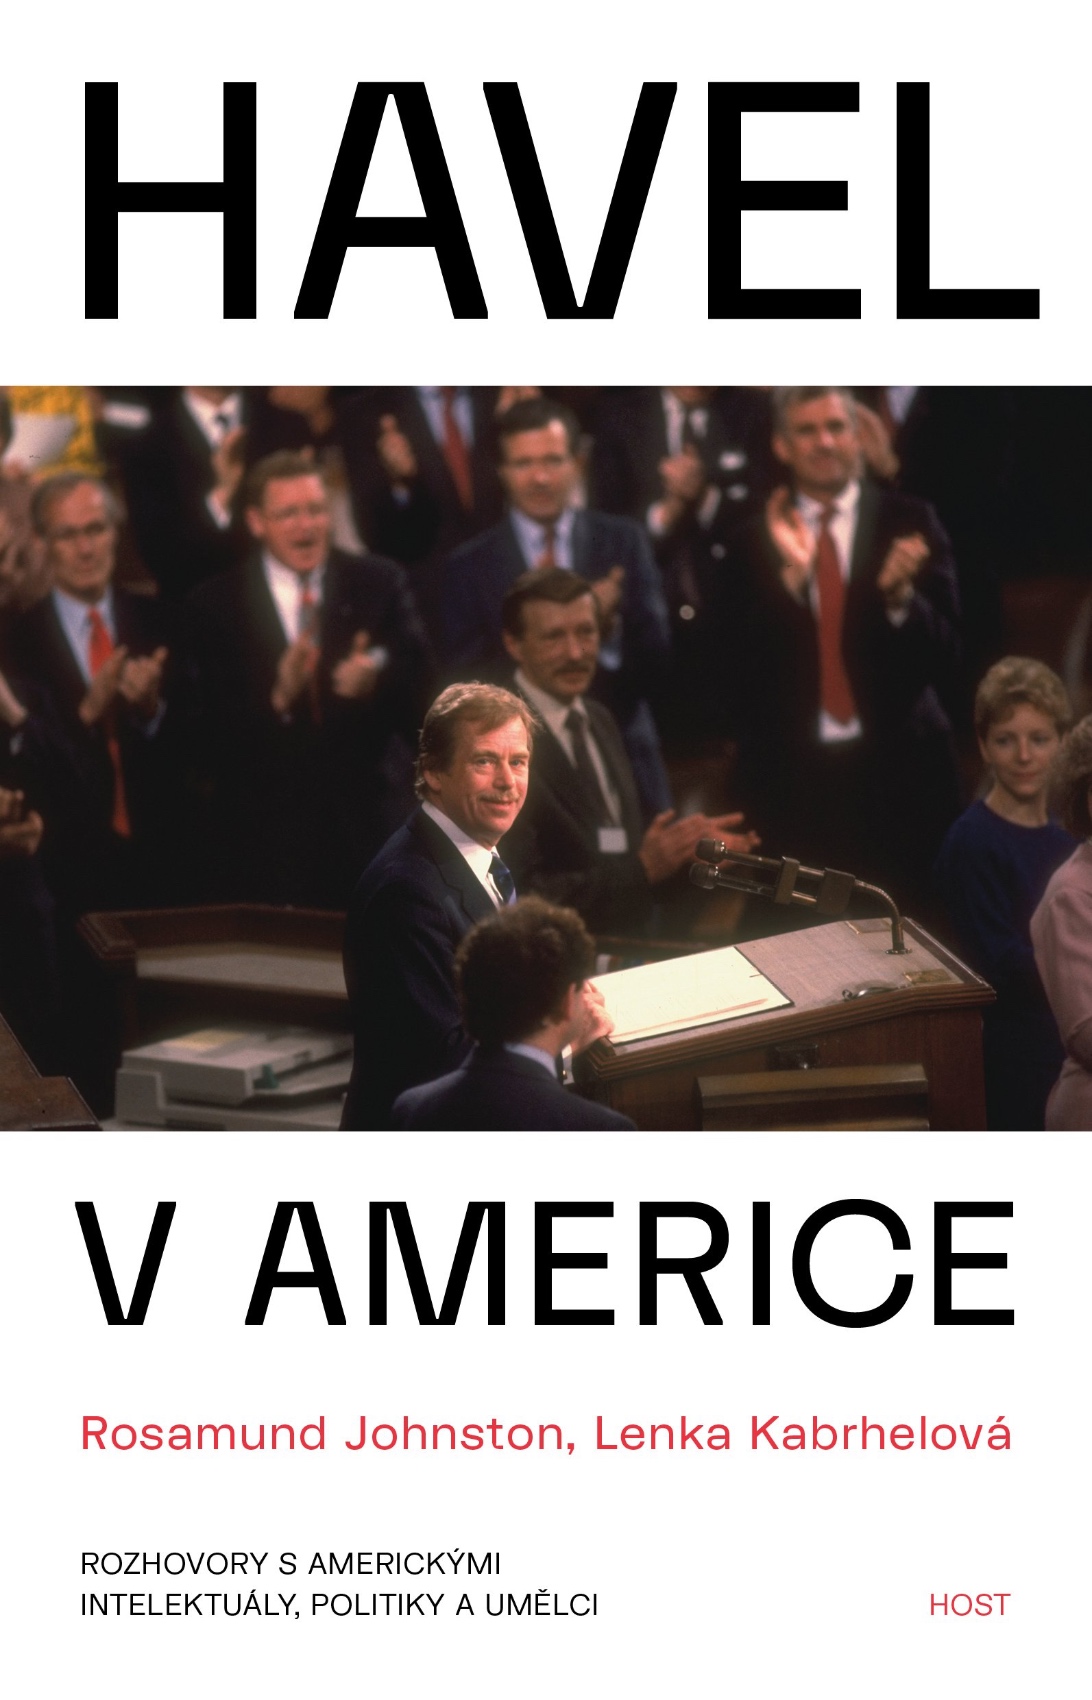 Havel in America